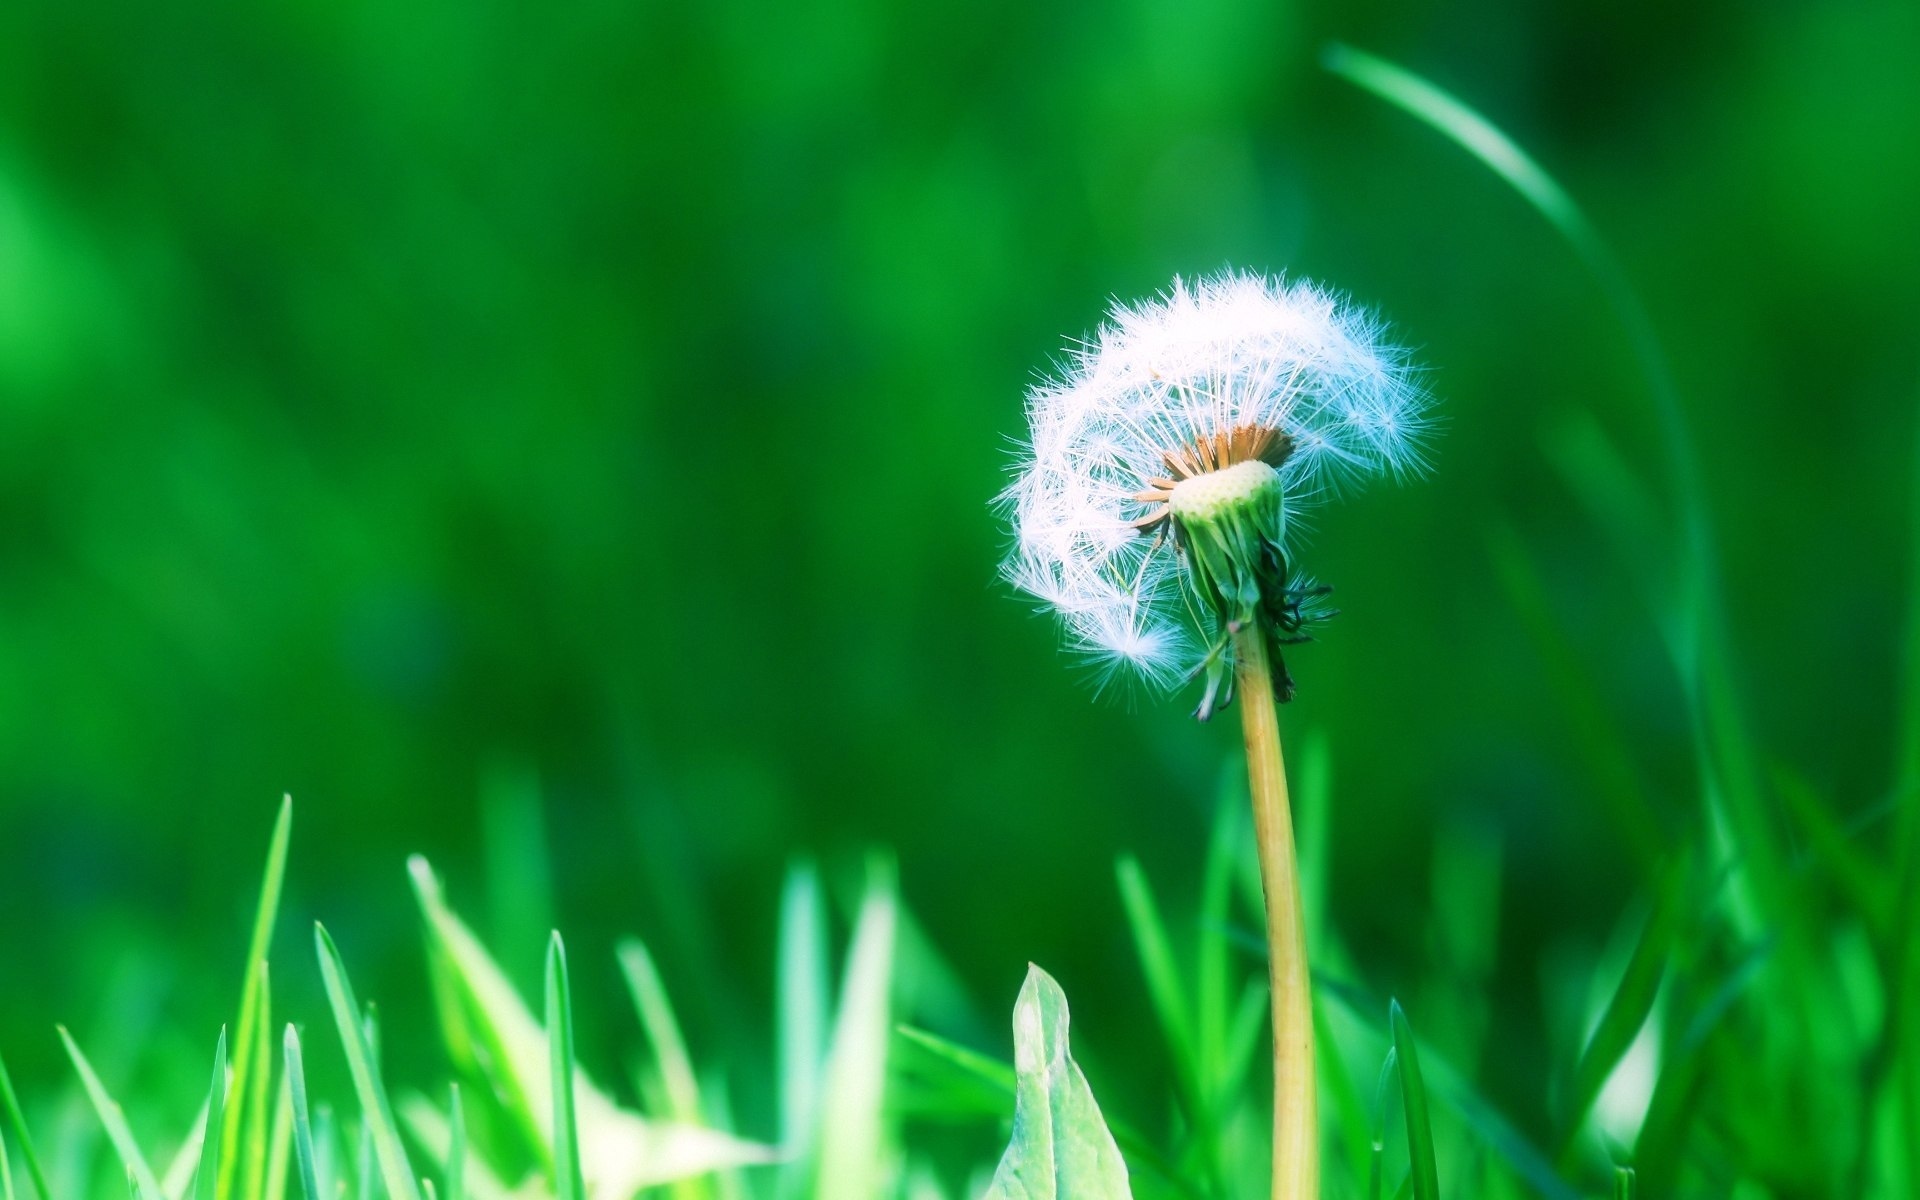 Hoa Bồ Công Anh: Là một trong những loài hoa phổ biến nhất trên thế giới, hoa Bồ Công Anh luôn thu hút sự chú ý của người ta bởi sắc tím như trời mùa hè. Hãy xem ảnh của loài hoa này để cảm nhận sự tràn đầy năng lượng, sức sống và sự tươi vui mà nó mang lại cho chúng ta.